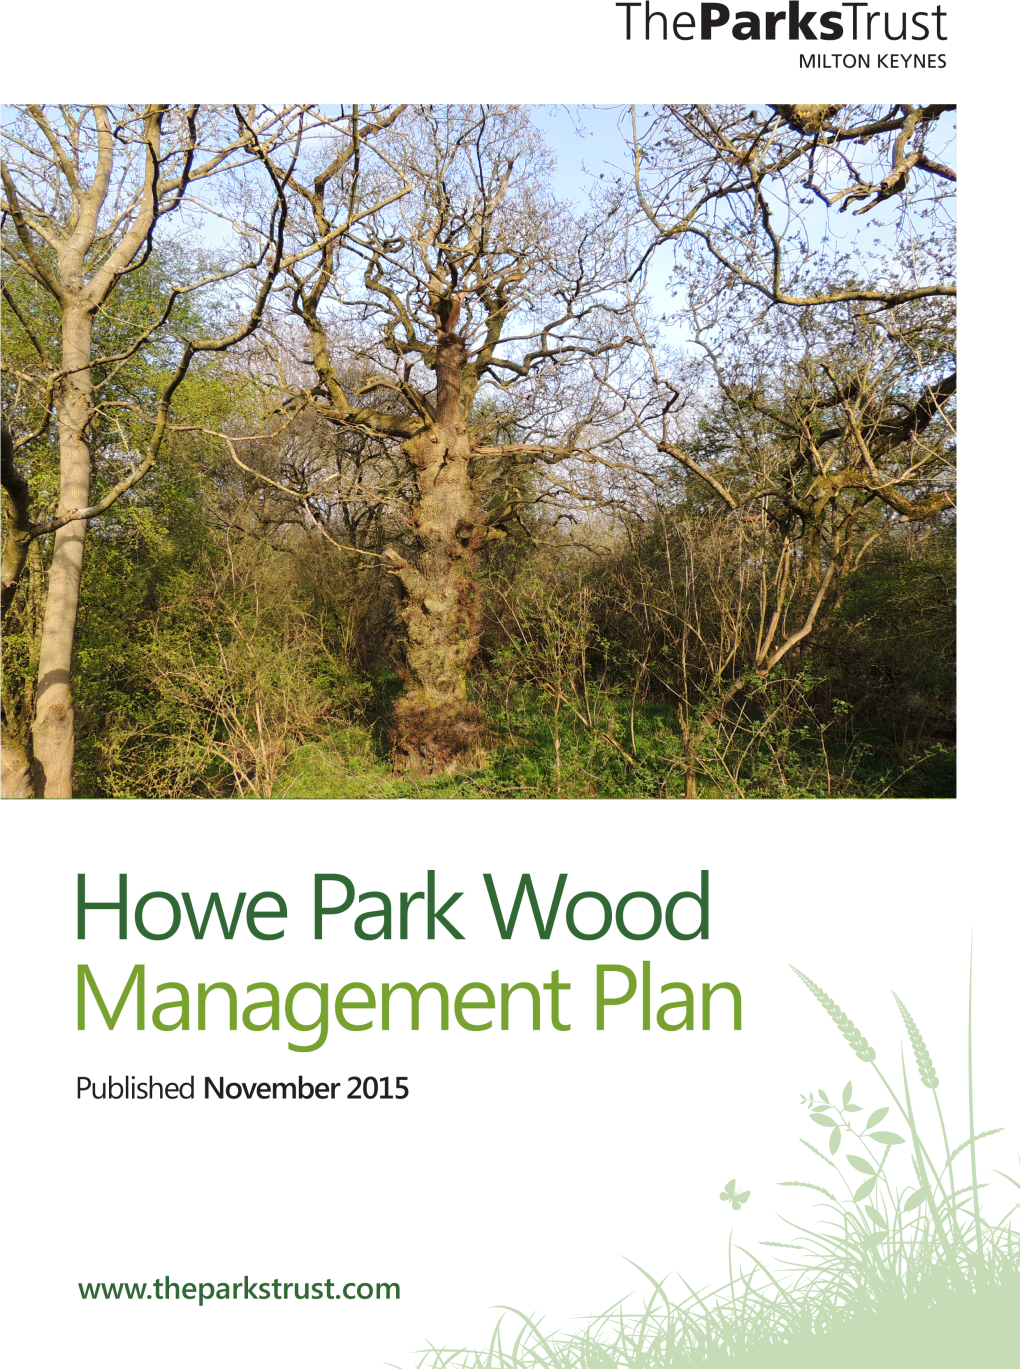 Howe Park Wood Management Plan 2015